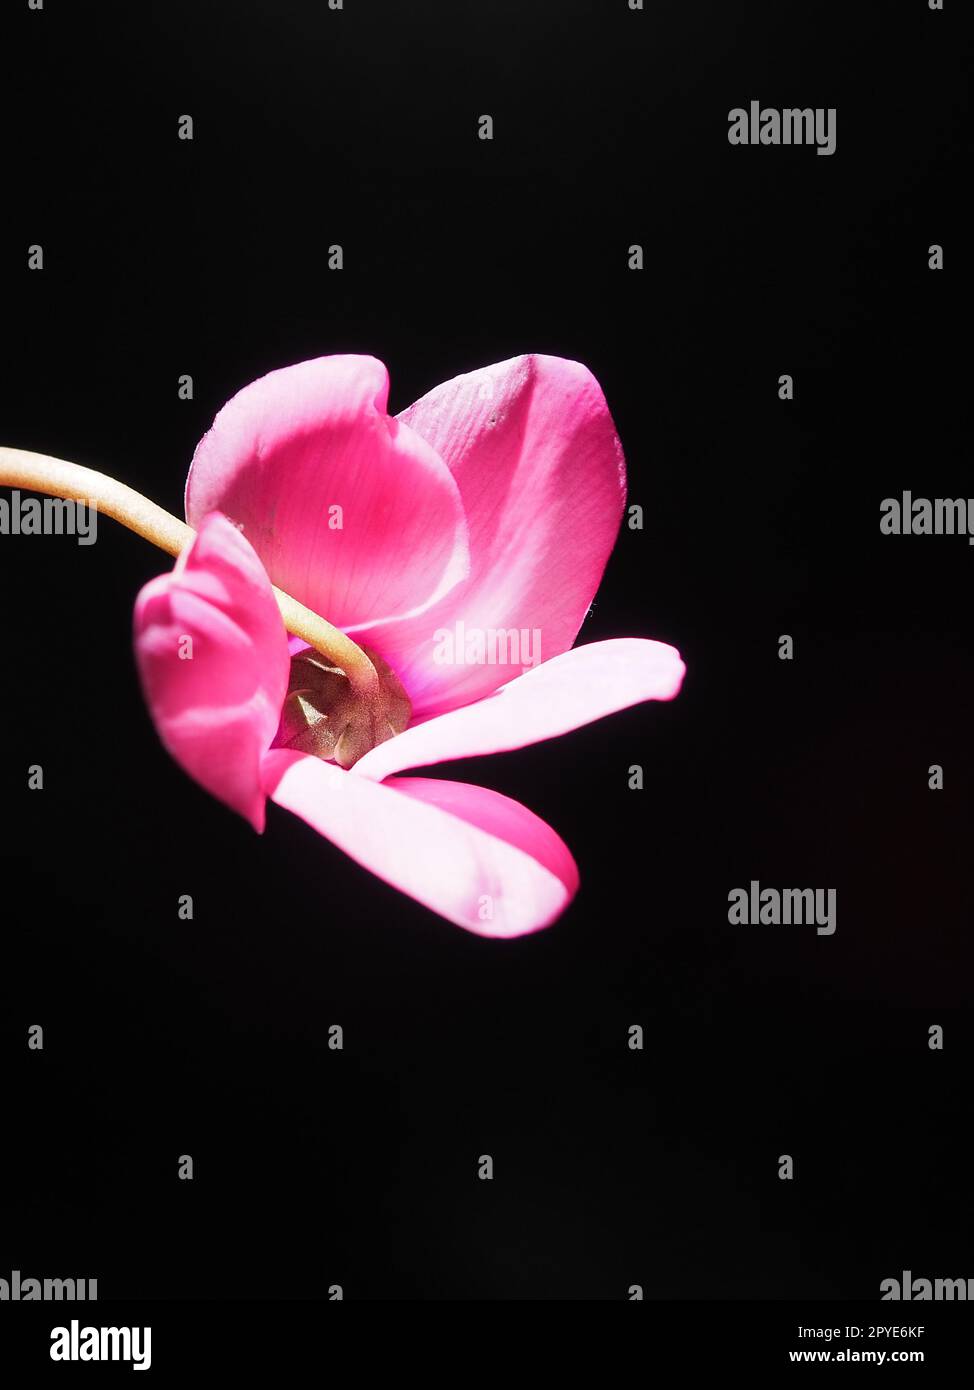 Cyclamen, ou violet alpin, est un genre de plantes de la sous-famille des Myrsinoideae de la famille des Primulaceae. Cyclamen rose sur fond noir. Espace de copie. Carte postale, invitation ou félicitations. Banque D'Images